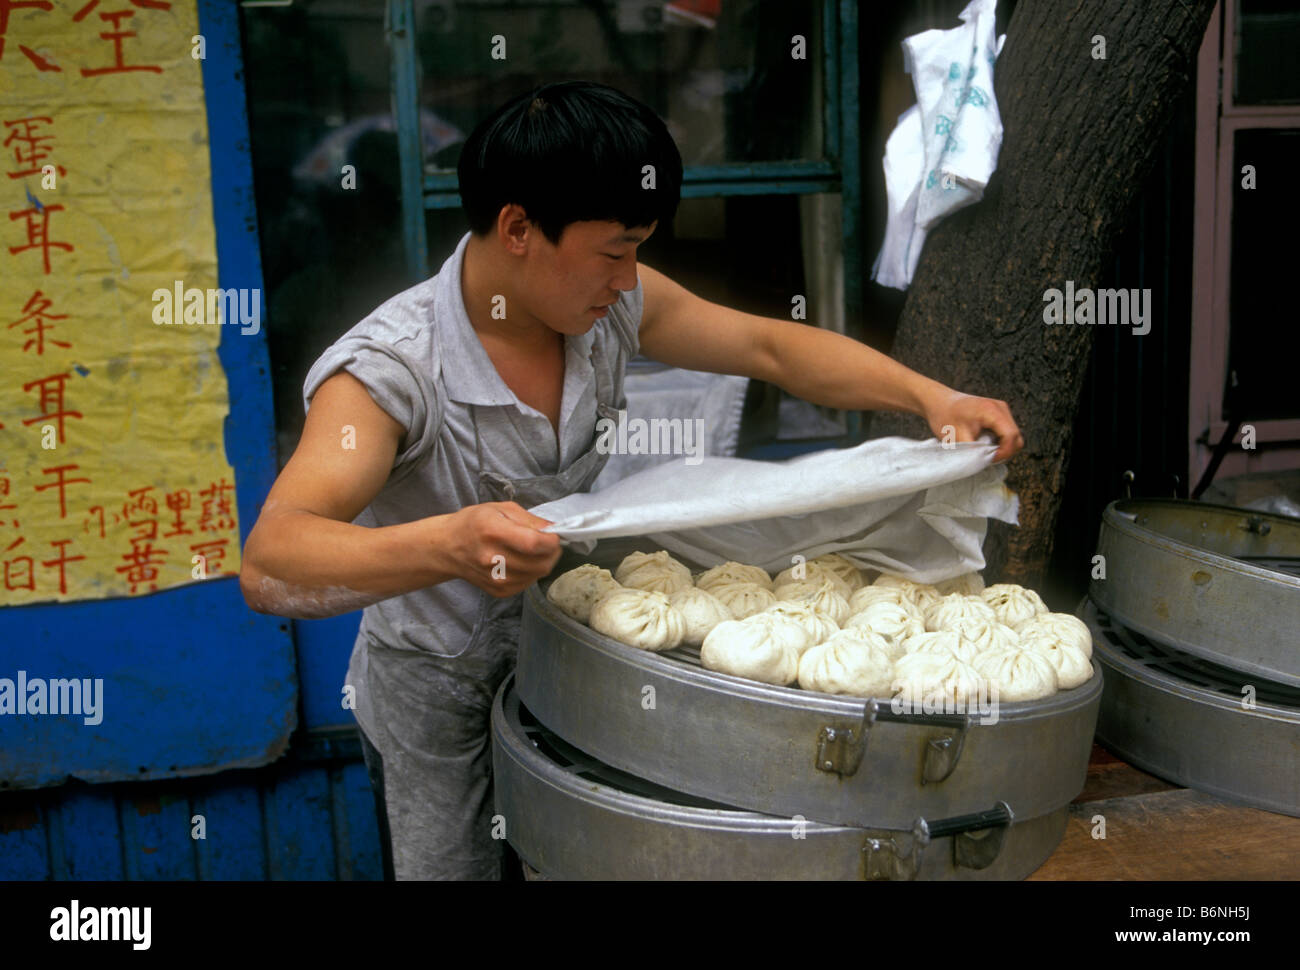 L'homme chinois, le porc bun bun porc, du vendeur le vendeur, la vente de porc cuit à la vapeur, des petits pains, brioches de porc marché 1A Longxiang Road, Beijing, la municipalité de Beijing, China, Asia Banque D'Images